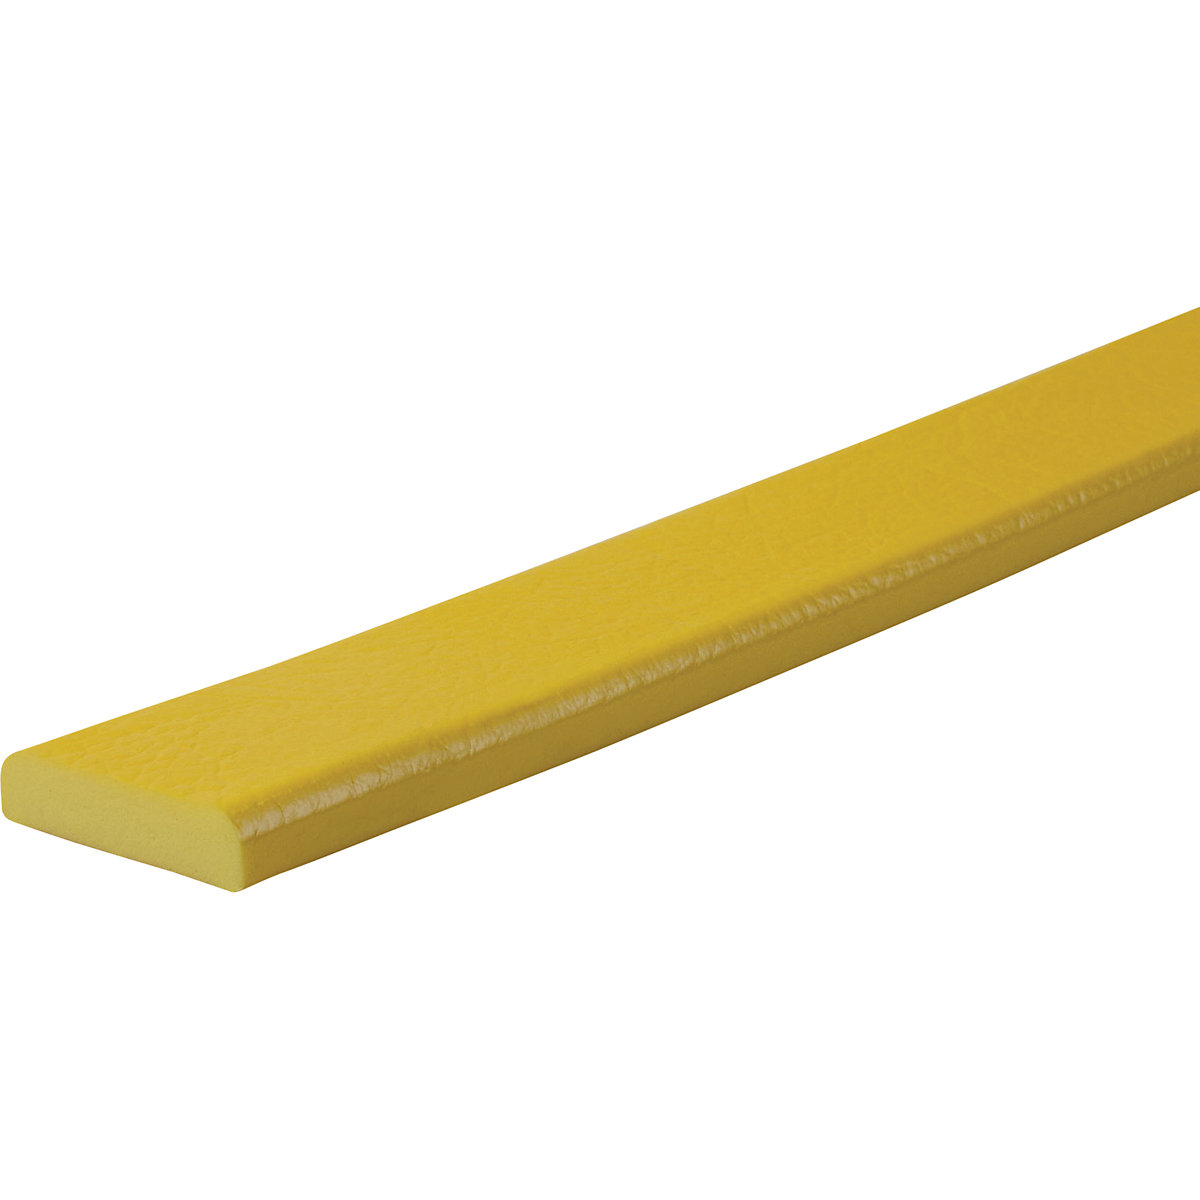 Protection des surfaces Knuffi® – SHG, type F, pièce de 1 m, jaune